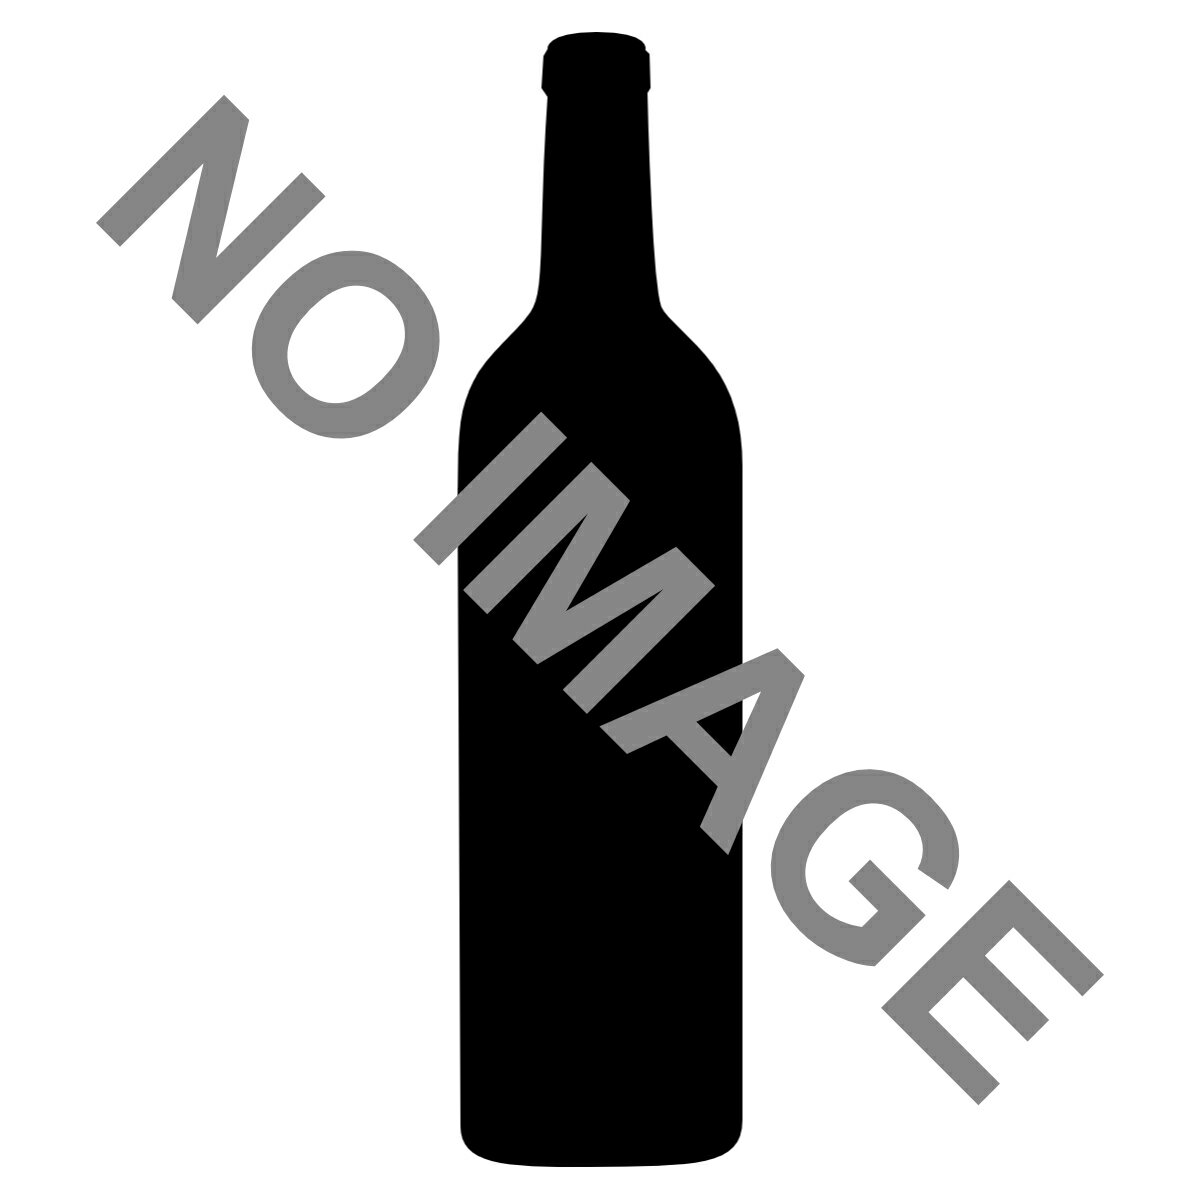 スパークリングワイン商品説明高品質なスパークリングワイン生産で知られるリョパールのスタンダードキュヴェ。18ヶ月以上の熟成による上質できめ細かい泡立ちと果実味が楽しめます。商品情報色・タイプ:白泡/辛口 フルーティー品種:チャレッロ 40% / マカベオ 30% / パレリャーダ 30%容量:750ml産地:スペイン　カタルーニャ　ペネデスこちらの商品はお取り寄せ商品になります。・発送まで2日〜5日お時間が掛かります。・発送予定日は予告なく変更される場合がございます。・ヴィンテージが変更になる場合がございます。・輸入元様の在庫が欠品する場合がございます。注意事項・商品リニューアル等により、パッケージデザイン、内容量、成分等が変更され、表示画像と異なる場合がございます。・大量注文等で一時在庫切れが発生する場合がございます。・他のサイトでも販売中で、在庫がない場合もあります。品切れの際は注文をキャンセルすることがありますので、ご了承ください。